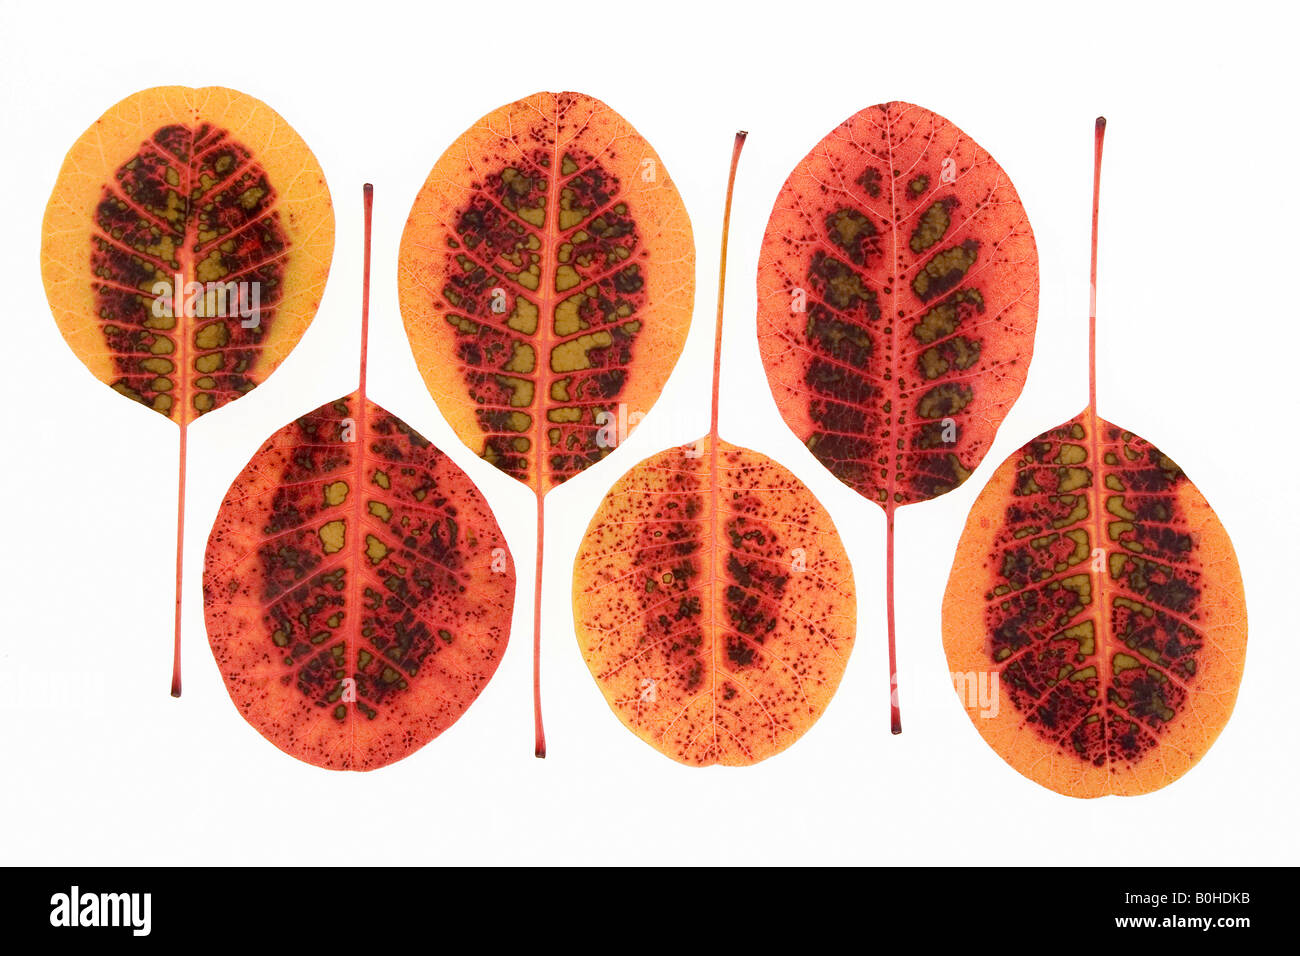 Fumo eurasiatica Tree (Cotinus coggygria, Rhus cotinus), autunno foglie colorate Foto Stock